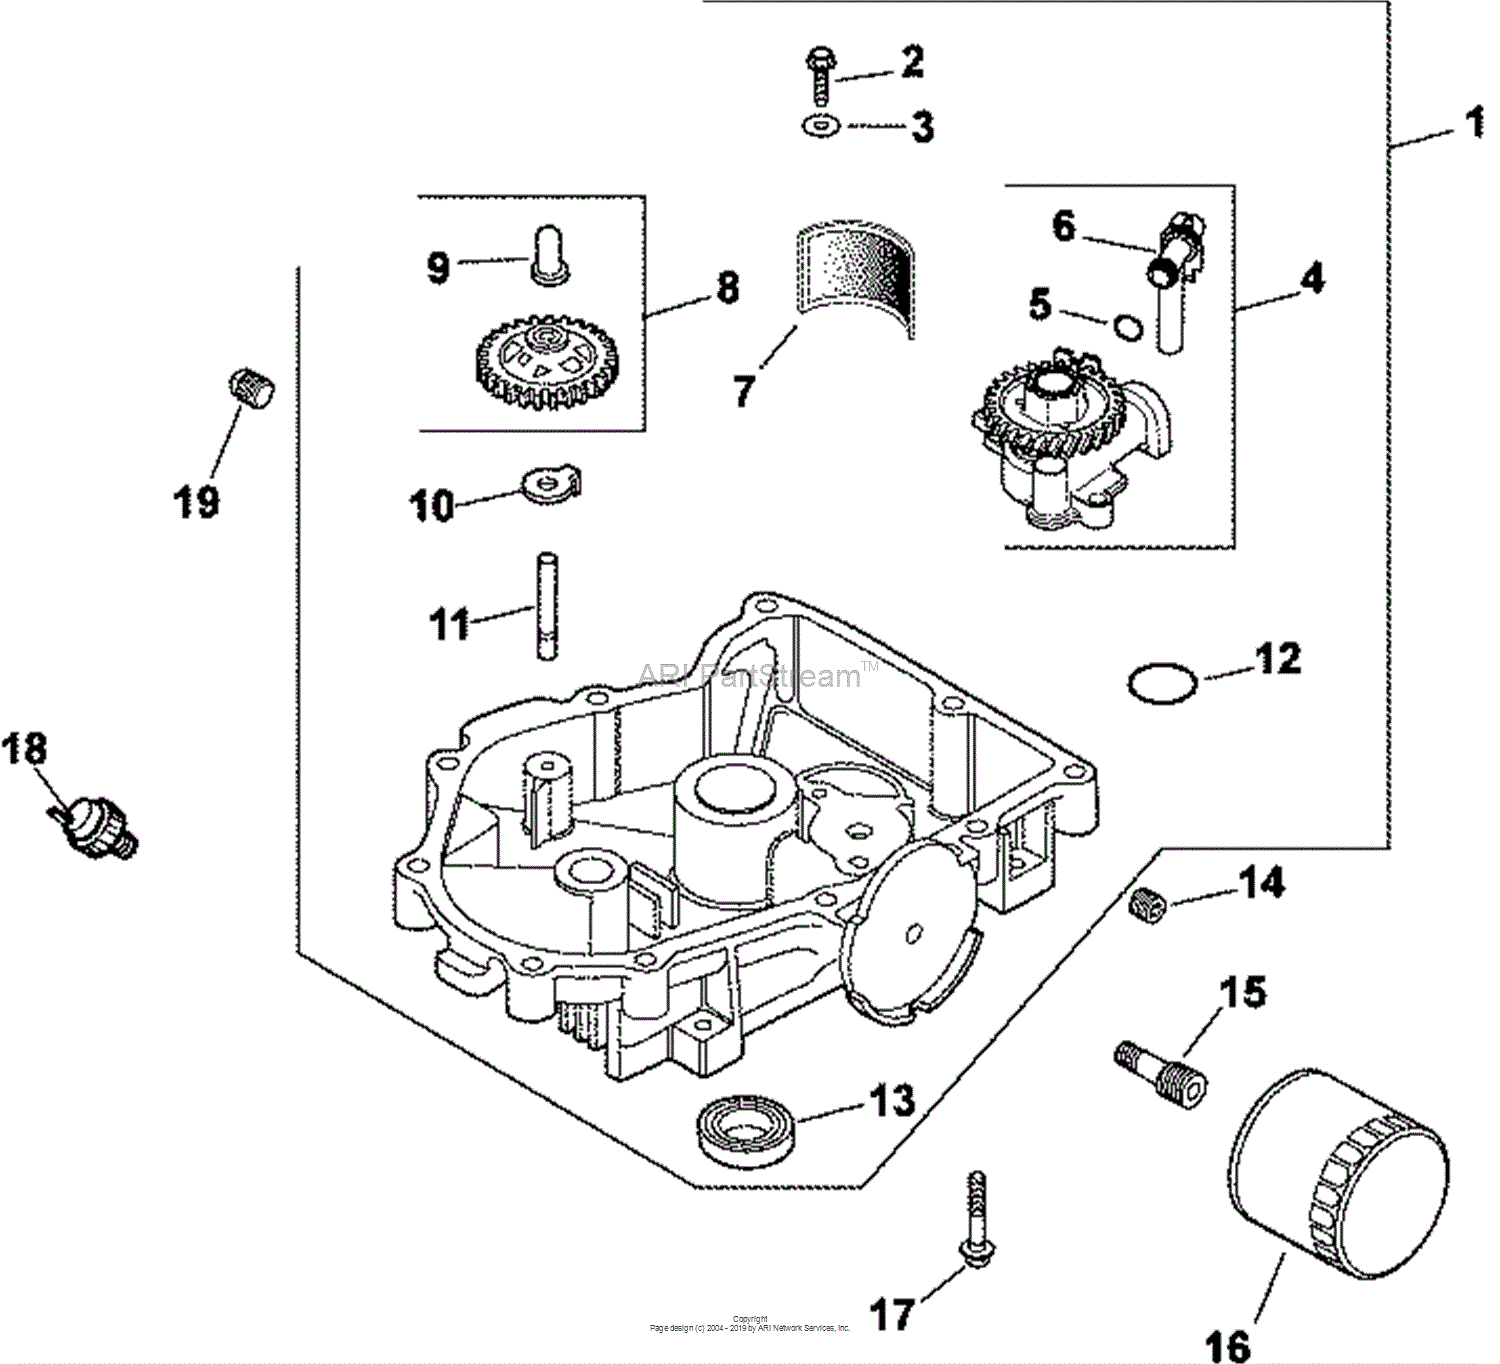 Kohler Ch680 Engine Wiring Diagram